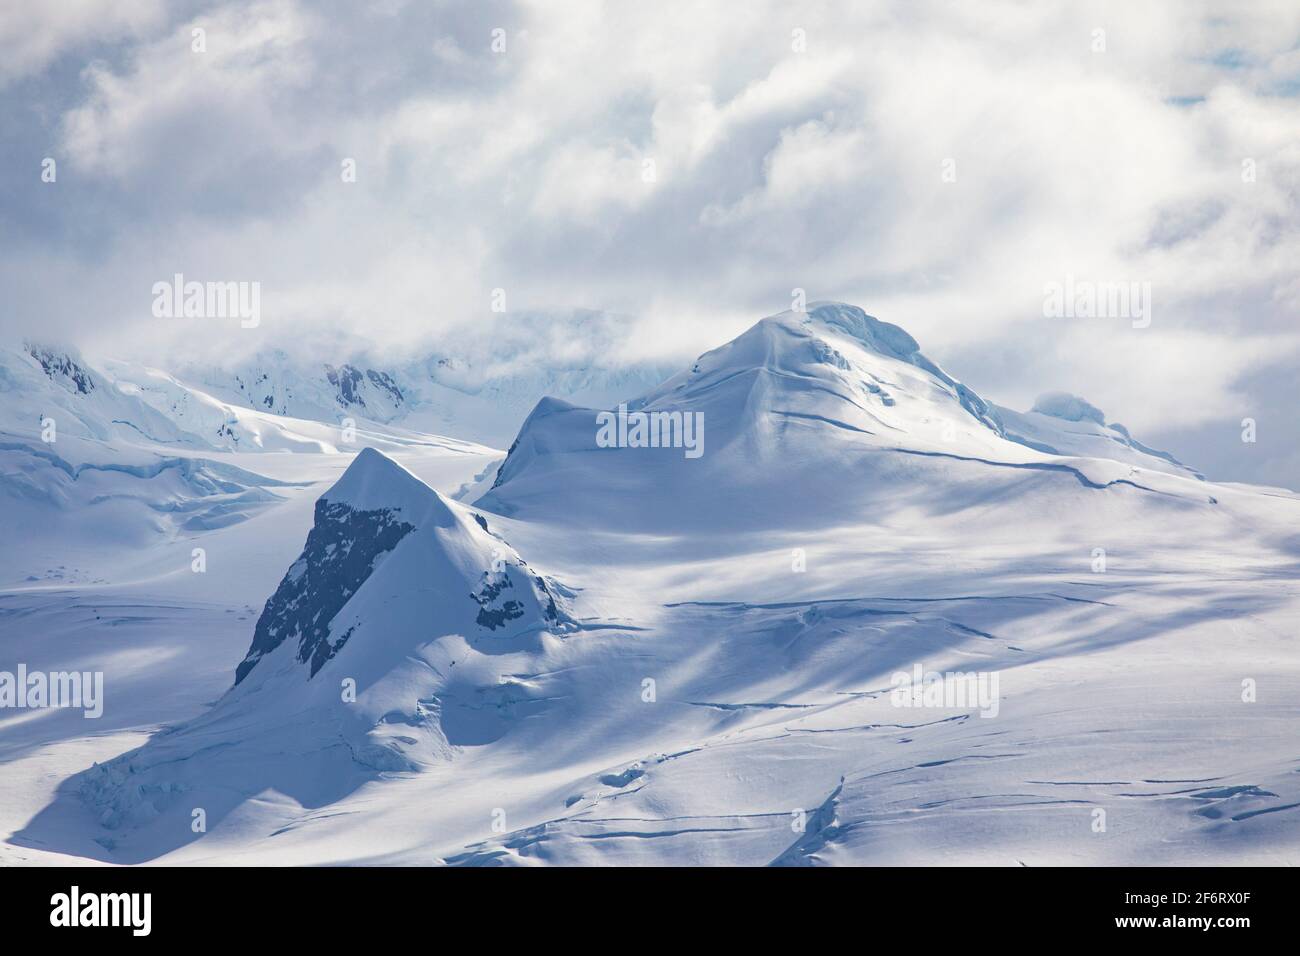 Haut de la chaîne de montagnes avec neige et glace près du pôle Sud en Antarctique. Banque D'Images